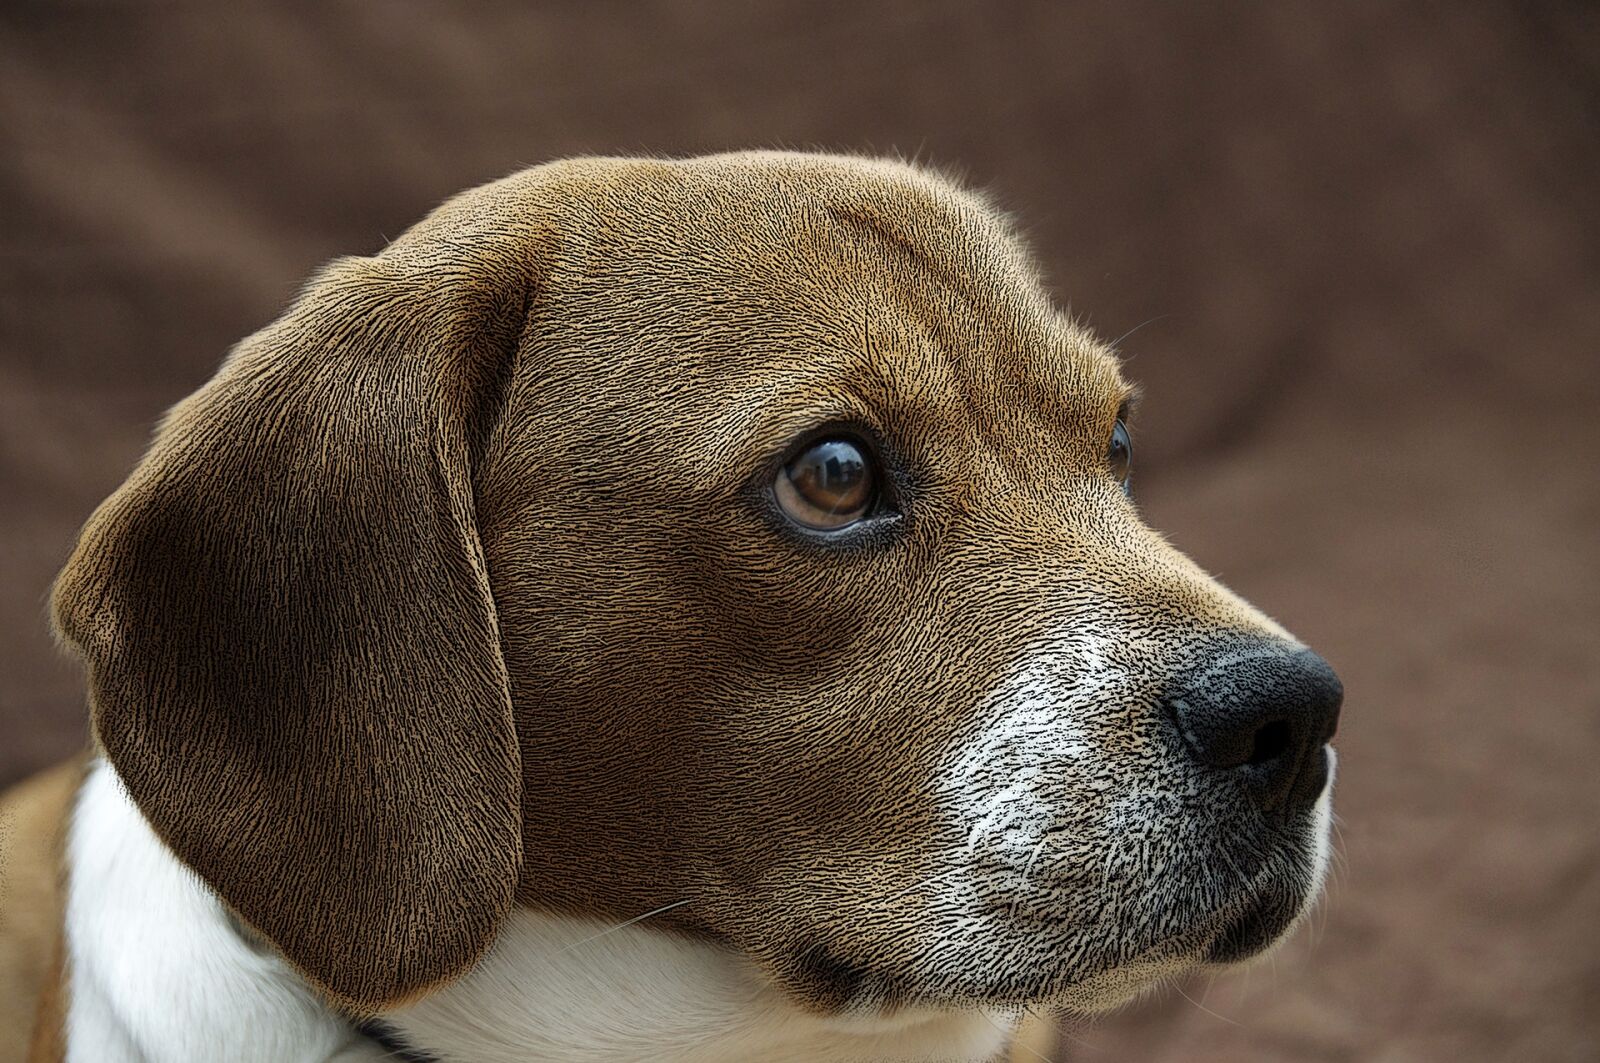 Nikon D90 sample photo. Dog, animal, domestic animal photography